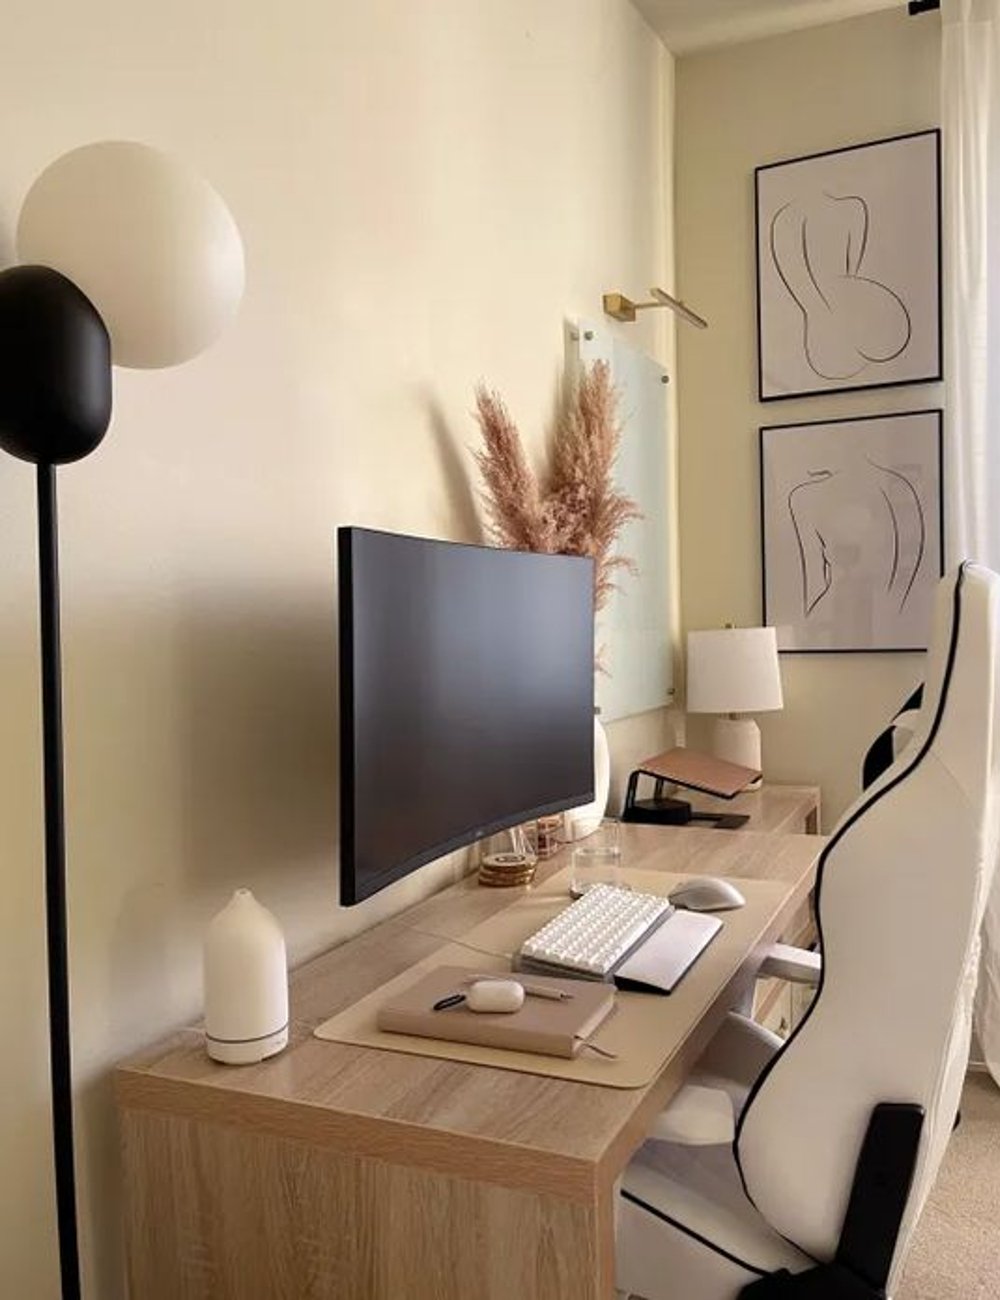 Decoração minimalista - decor - mesa de escritório - casa - dicas - https://stealthelook.com.br